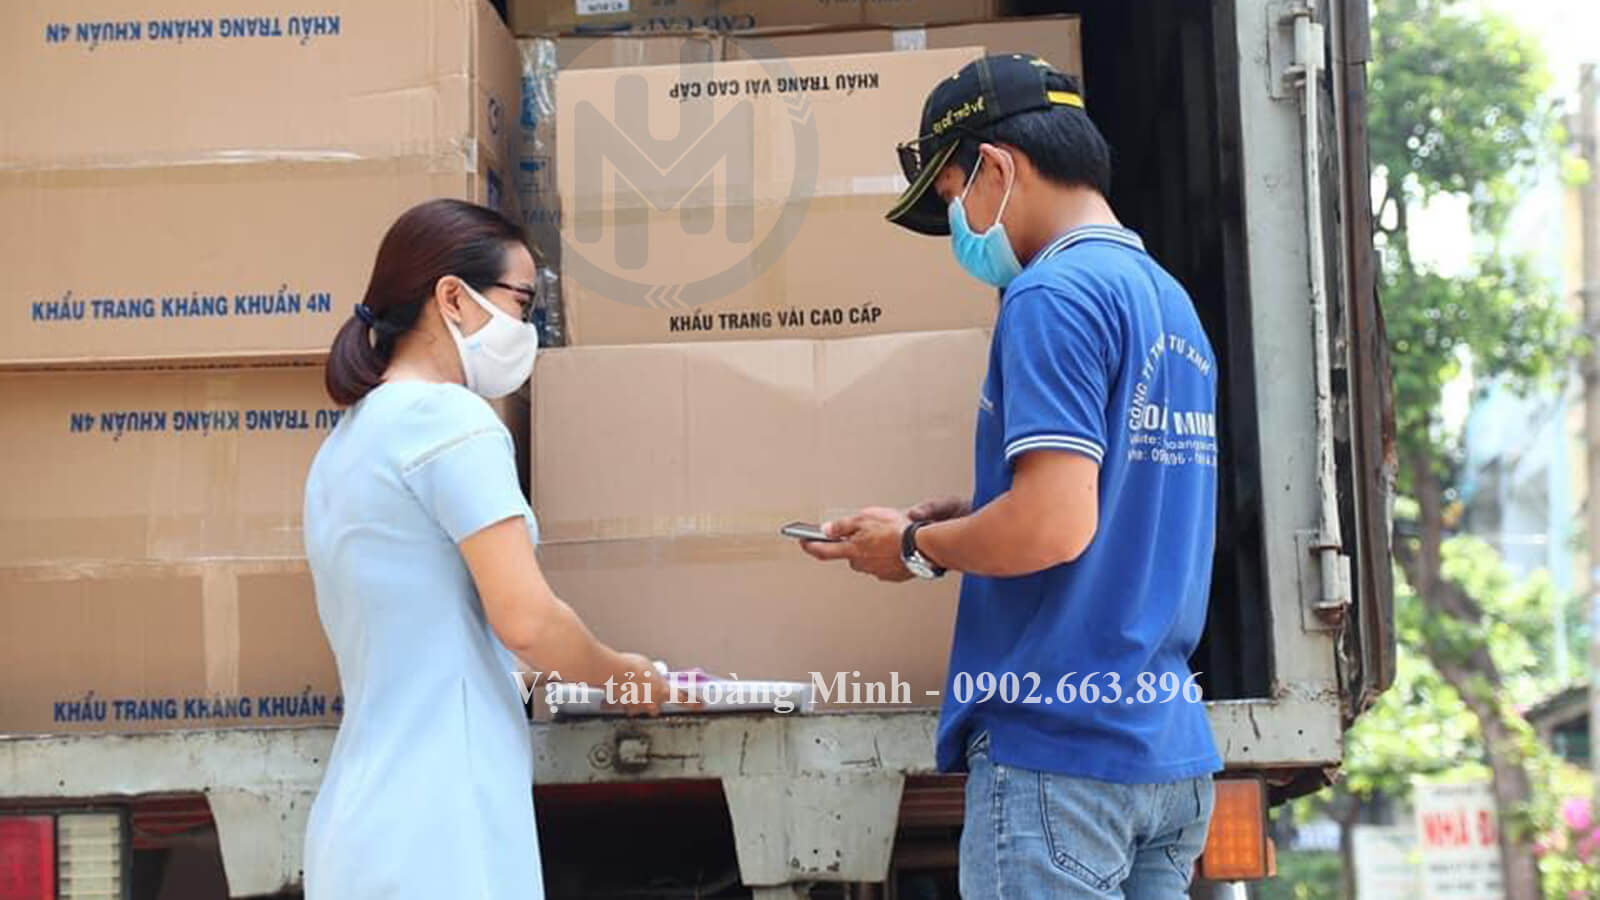 Thủ tục thuê xe tải chở hàng Quận Tân Phú như thế nào